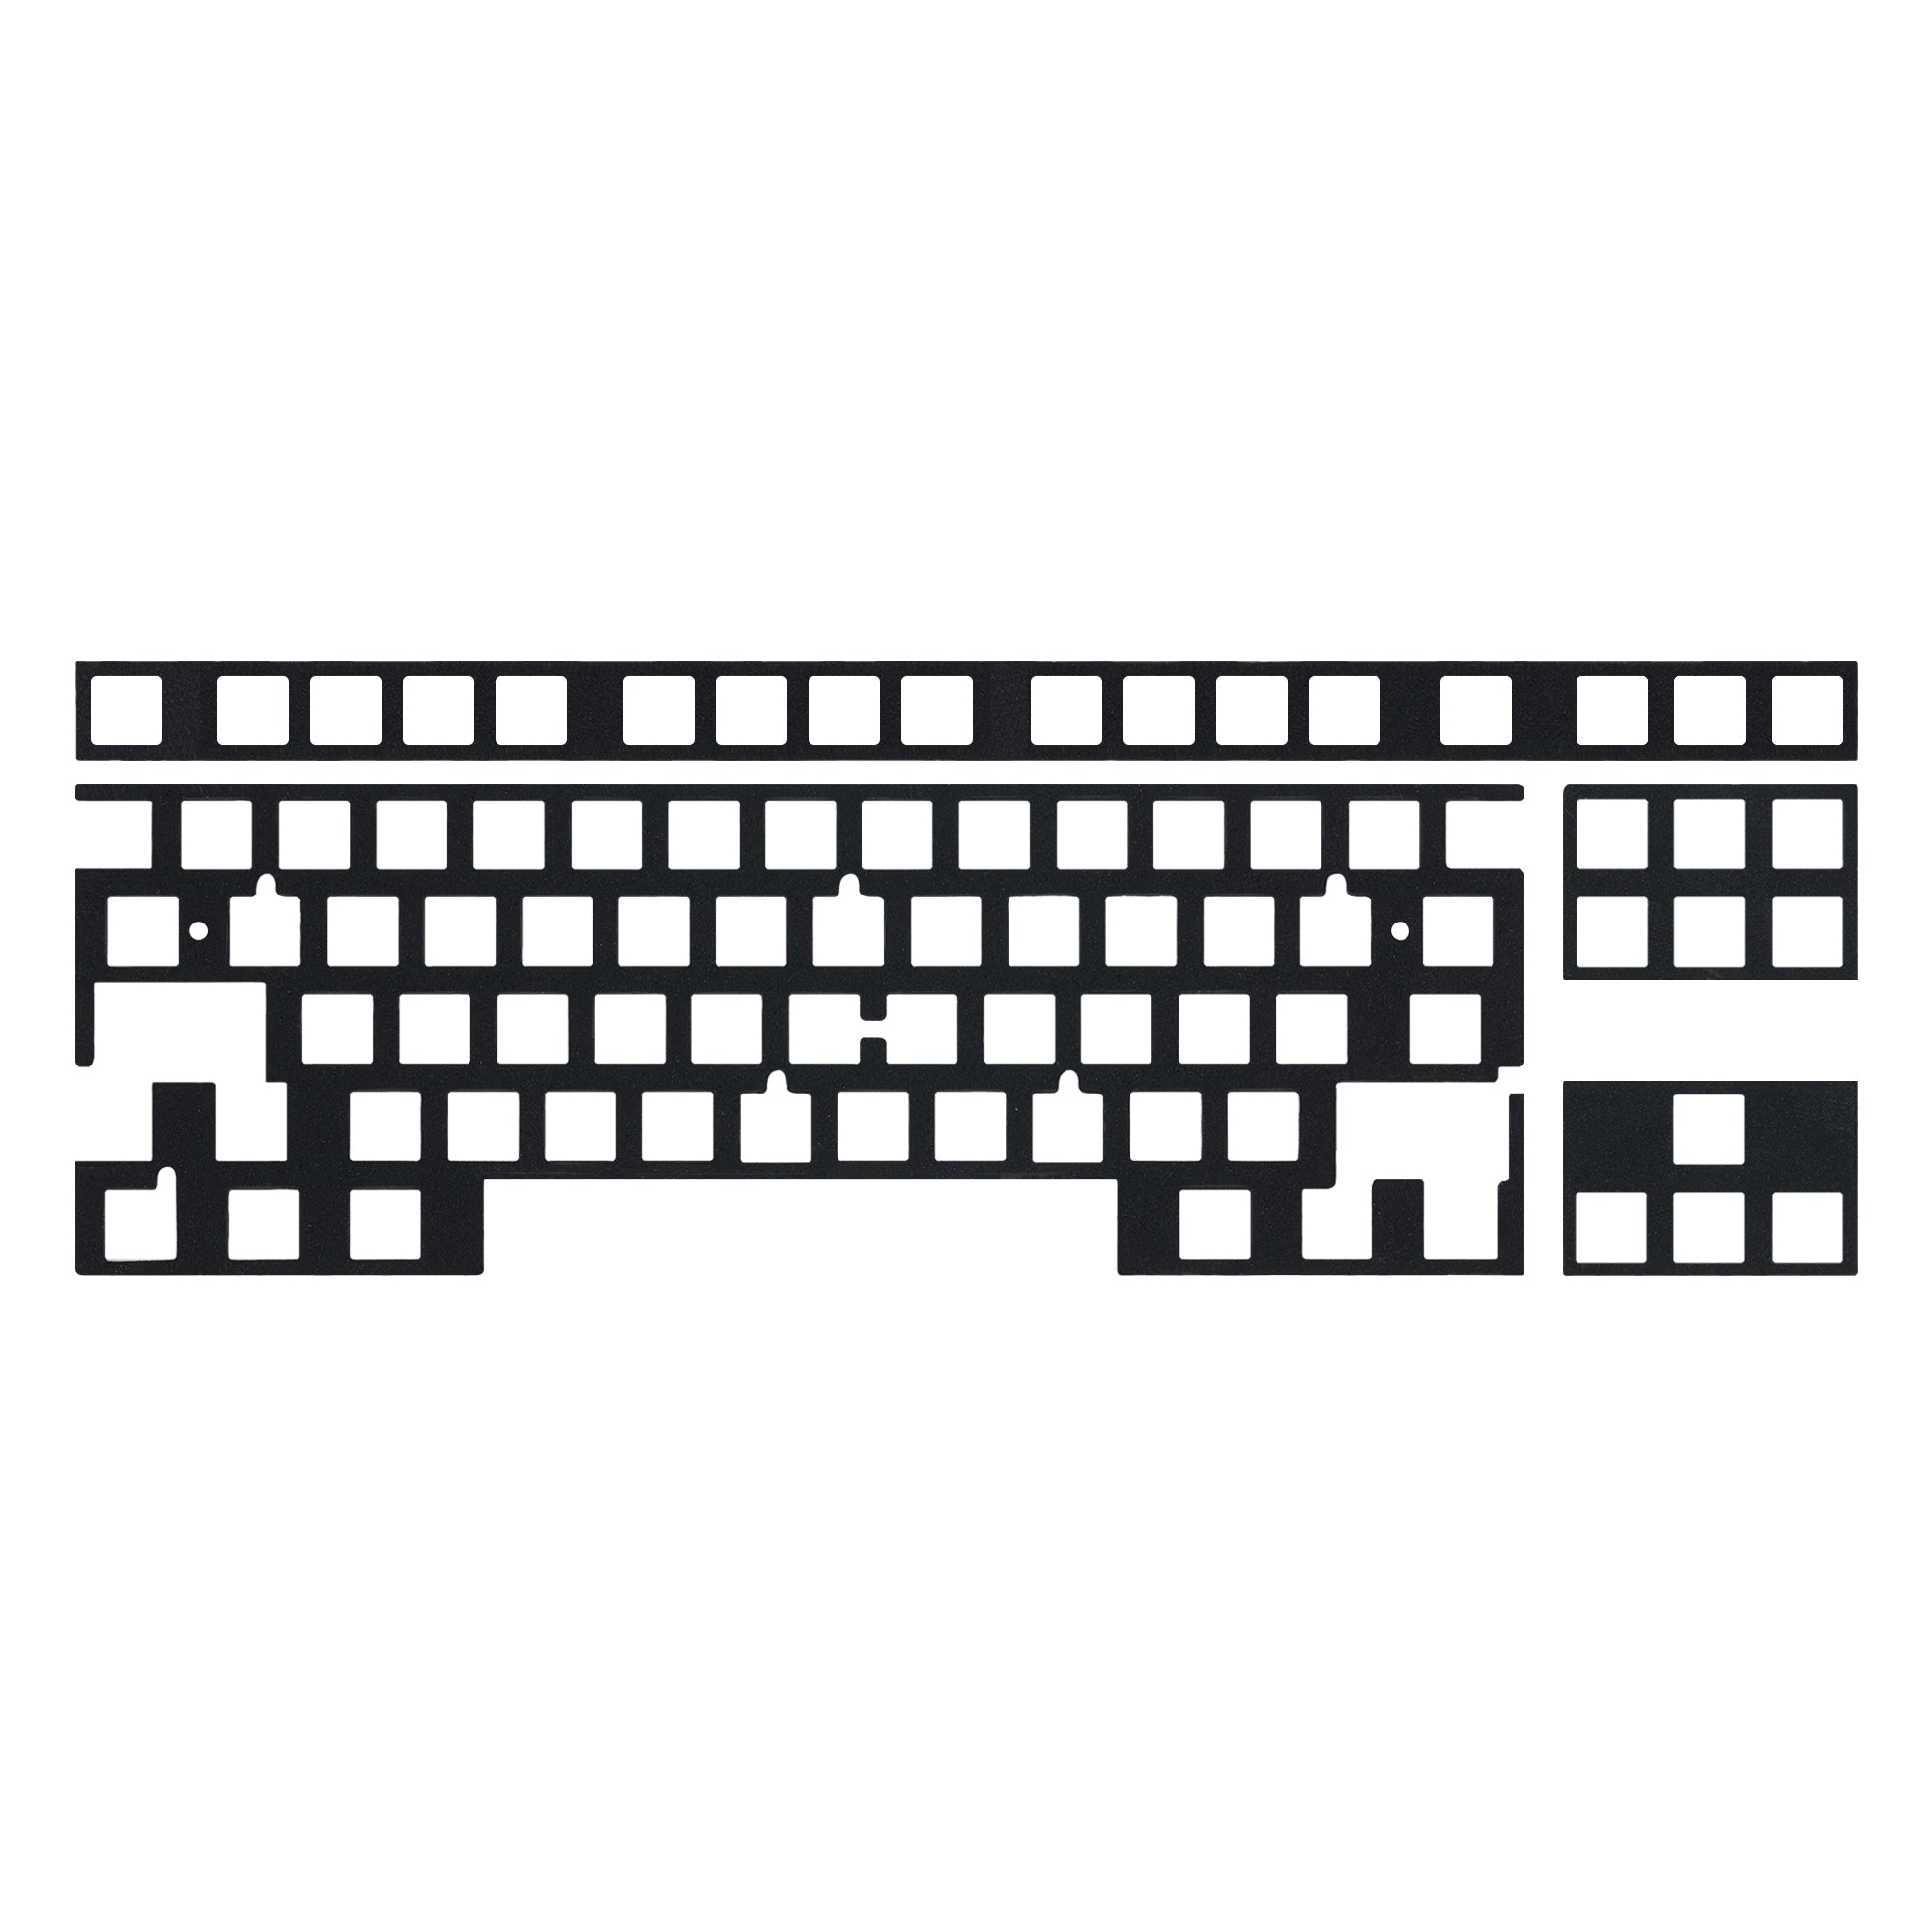 KBDfans Custom Keyboard 80% PCB Foams/Function Row/Navigation Arrow Foams